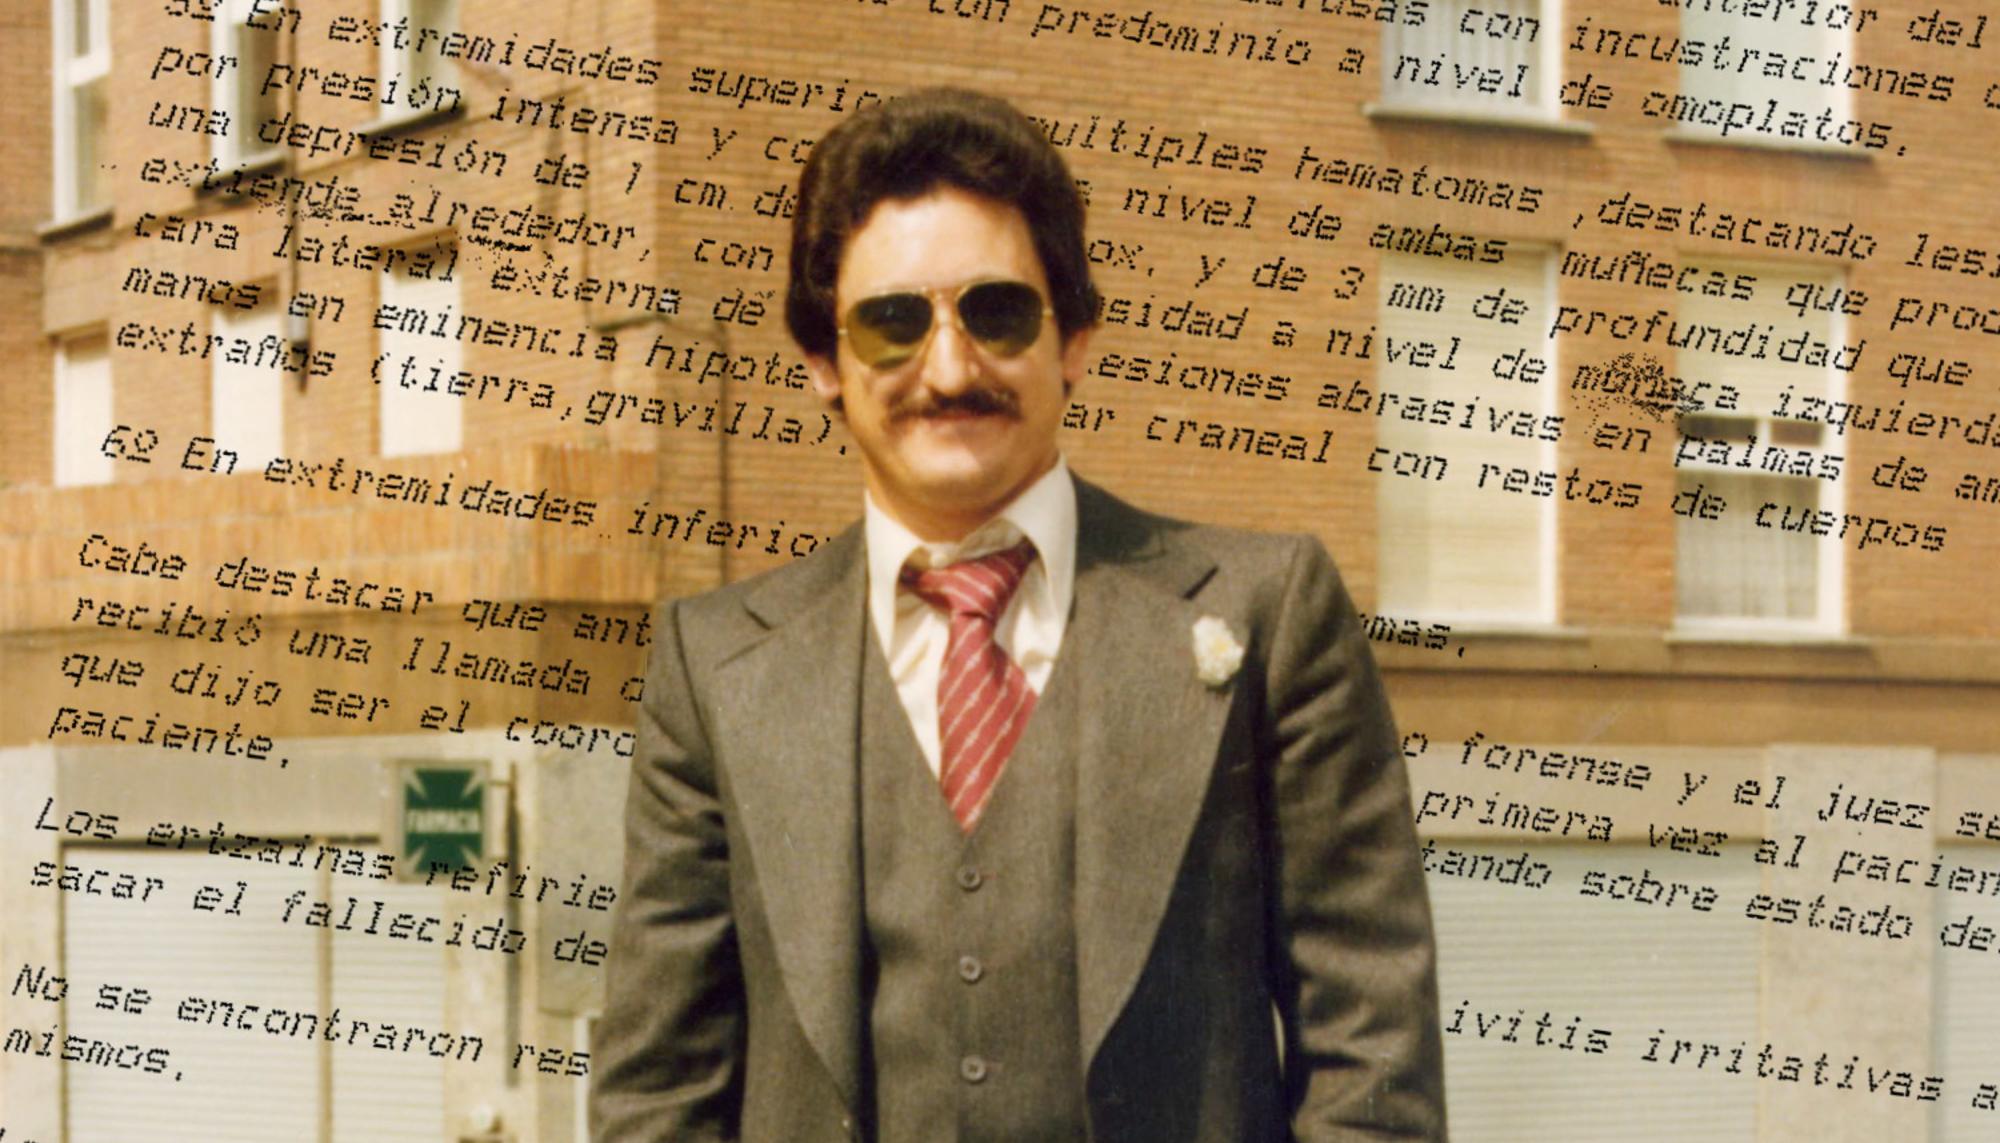 Juan Calvo central